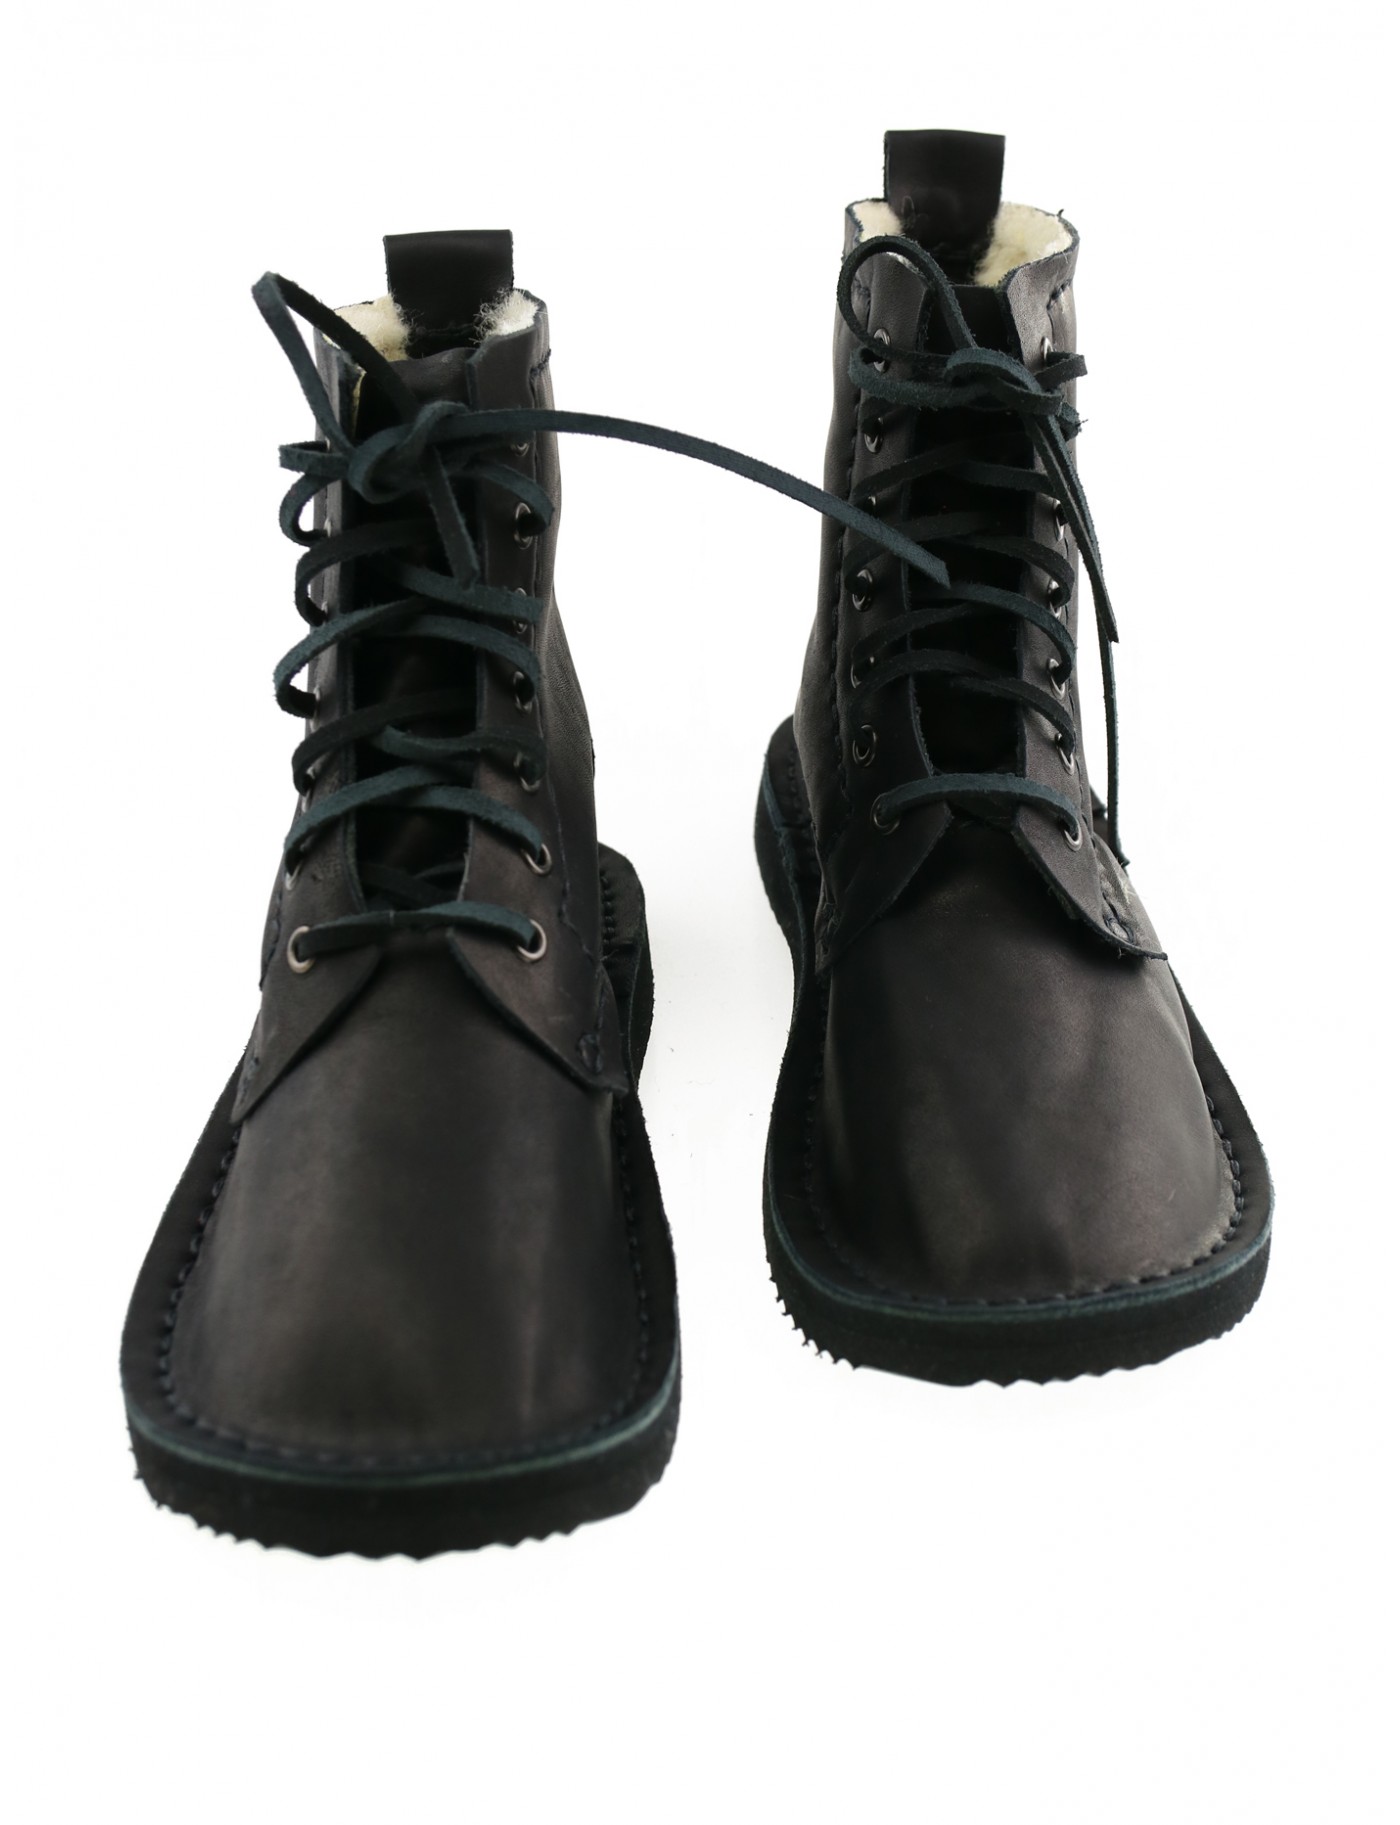 Ręcznie szyte buty skórzane w kolorze czarnym, sznurowane rzemykiem.